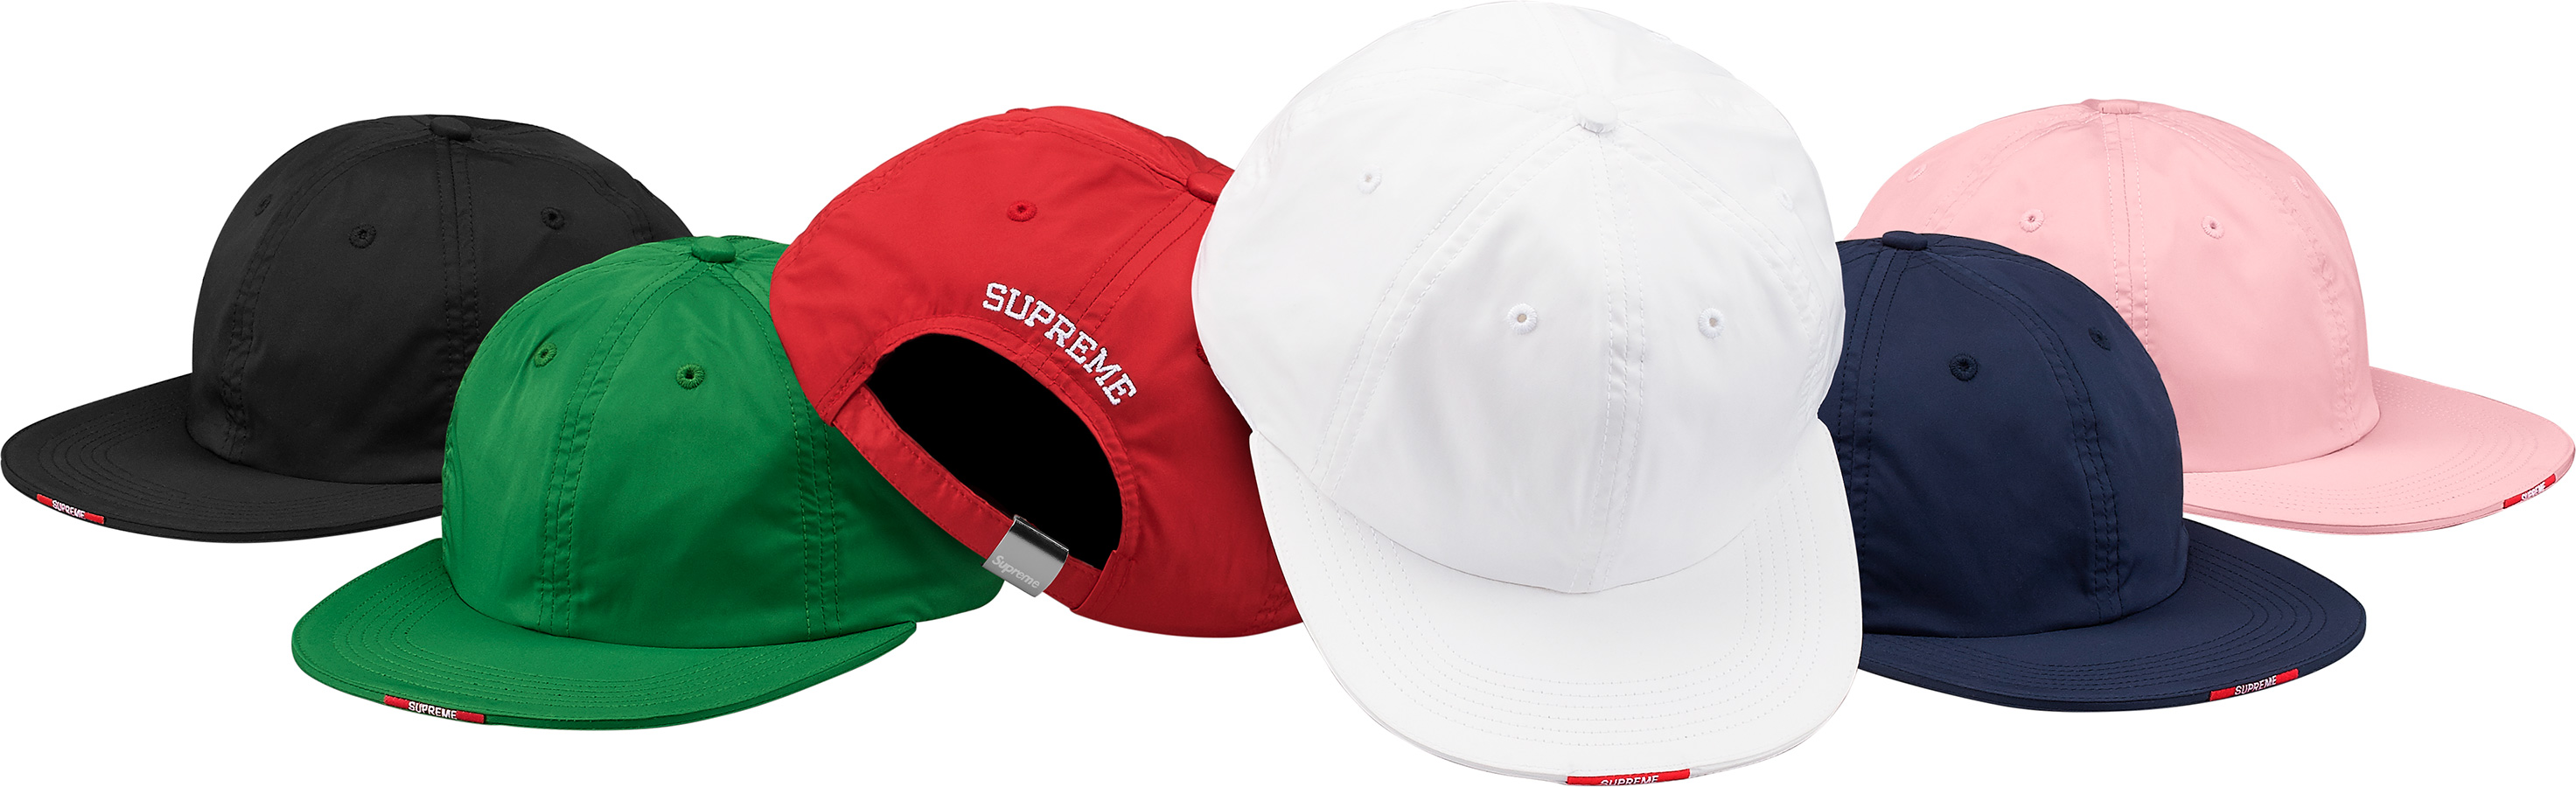 Supreme Visor Label 6-panel Cap - Baseball Cap, HD Png Download